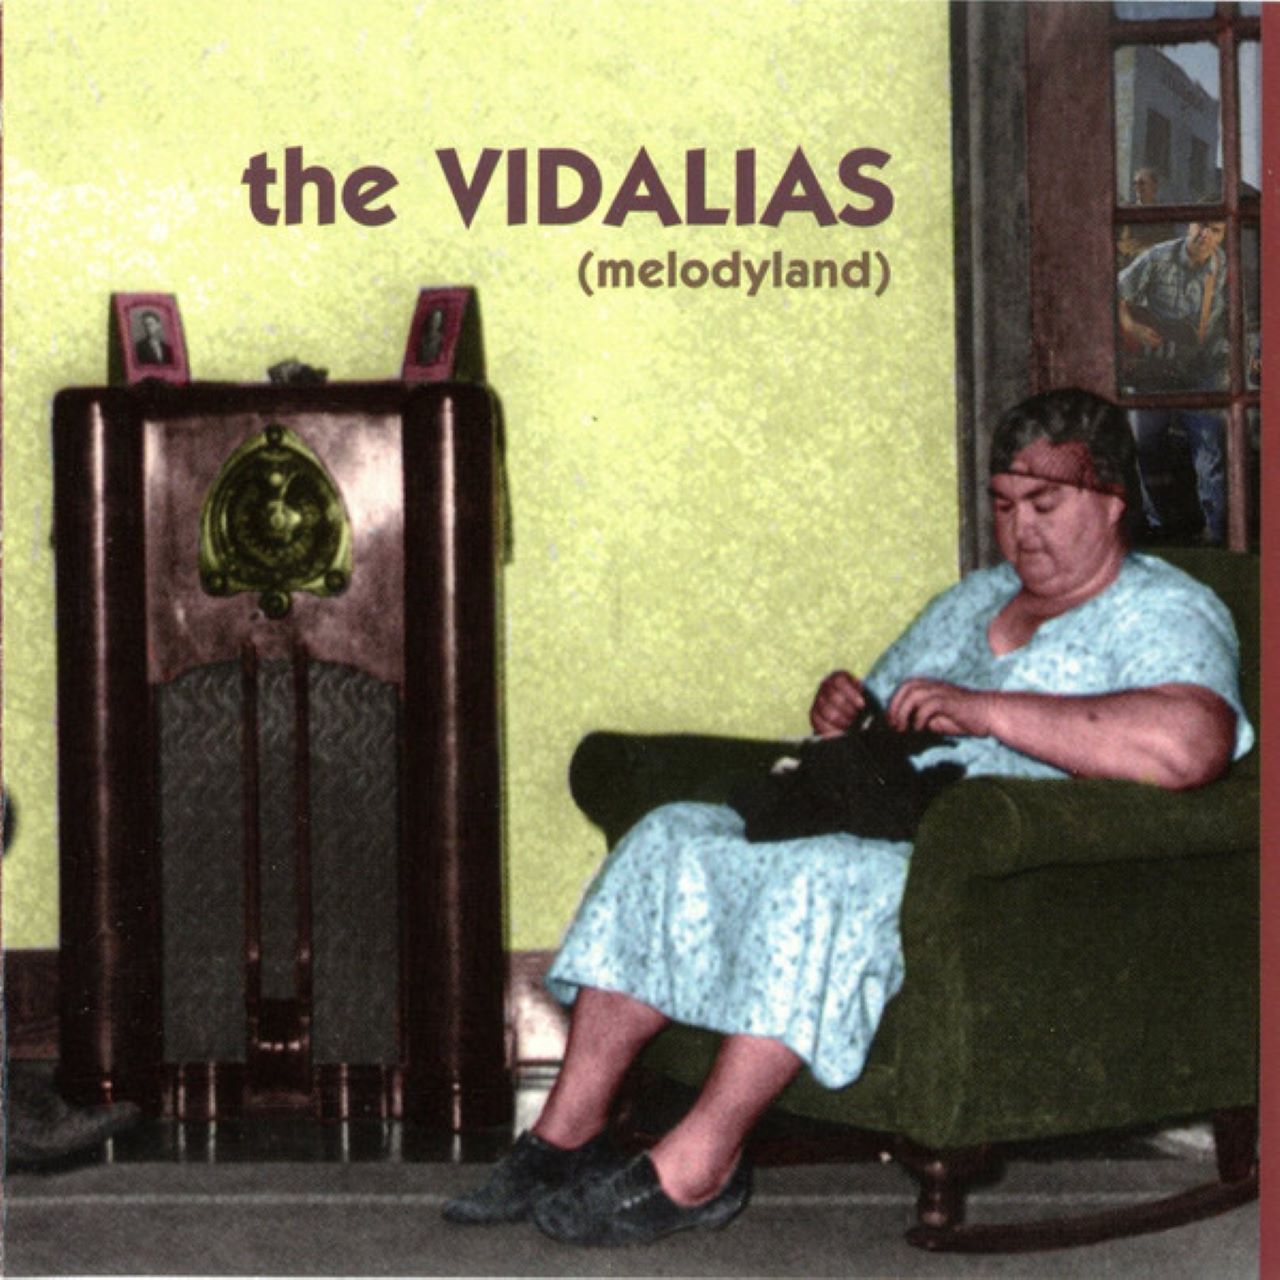 Vidalias - Melodyland cover album